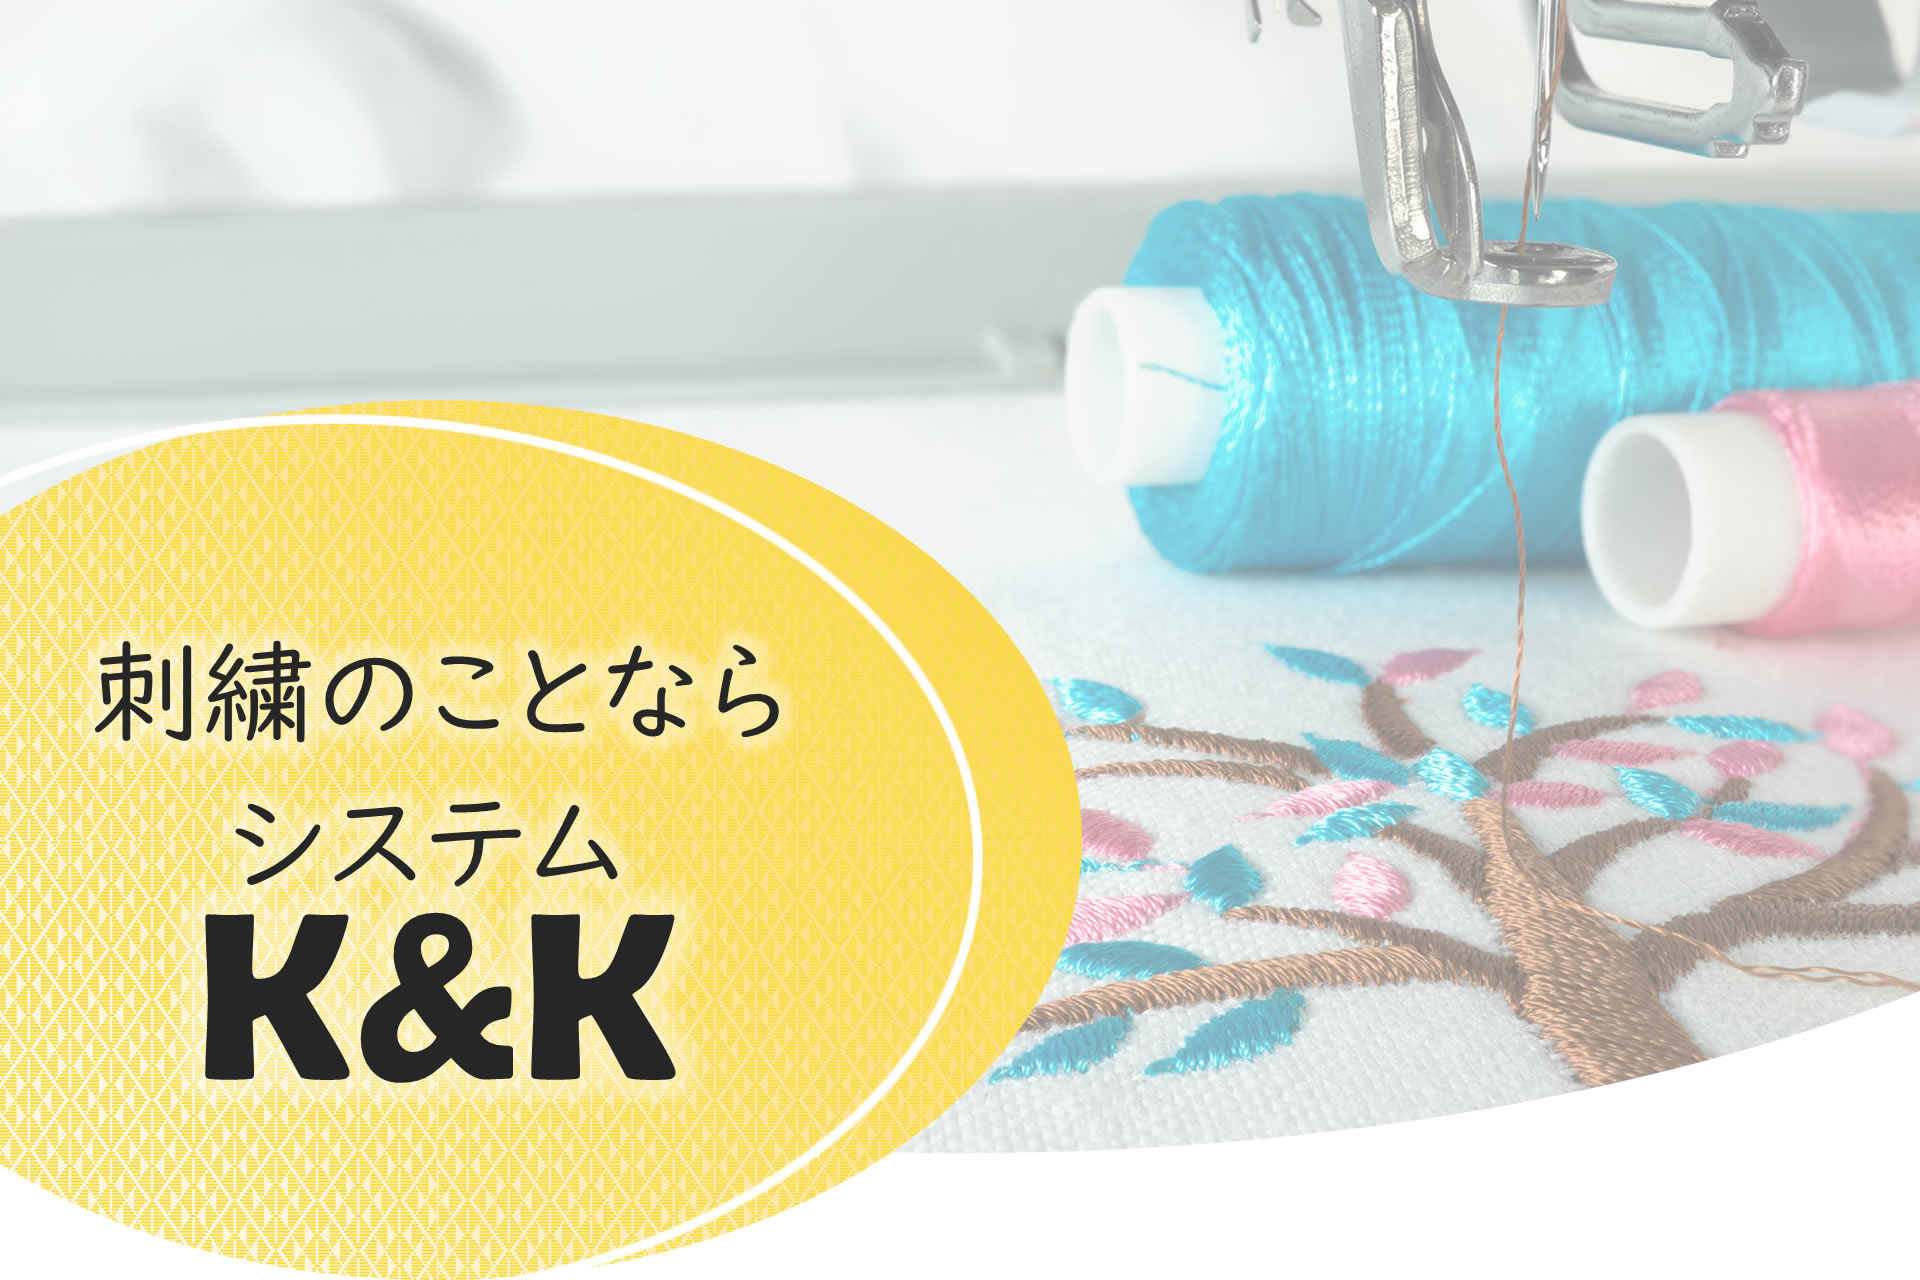 株式会社システムK&K｜東日本を中心に各種刺繍ミシンメーカーの販売及びサポート